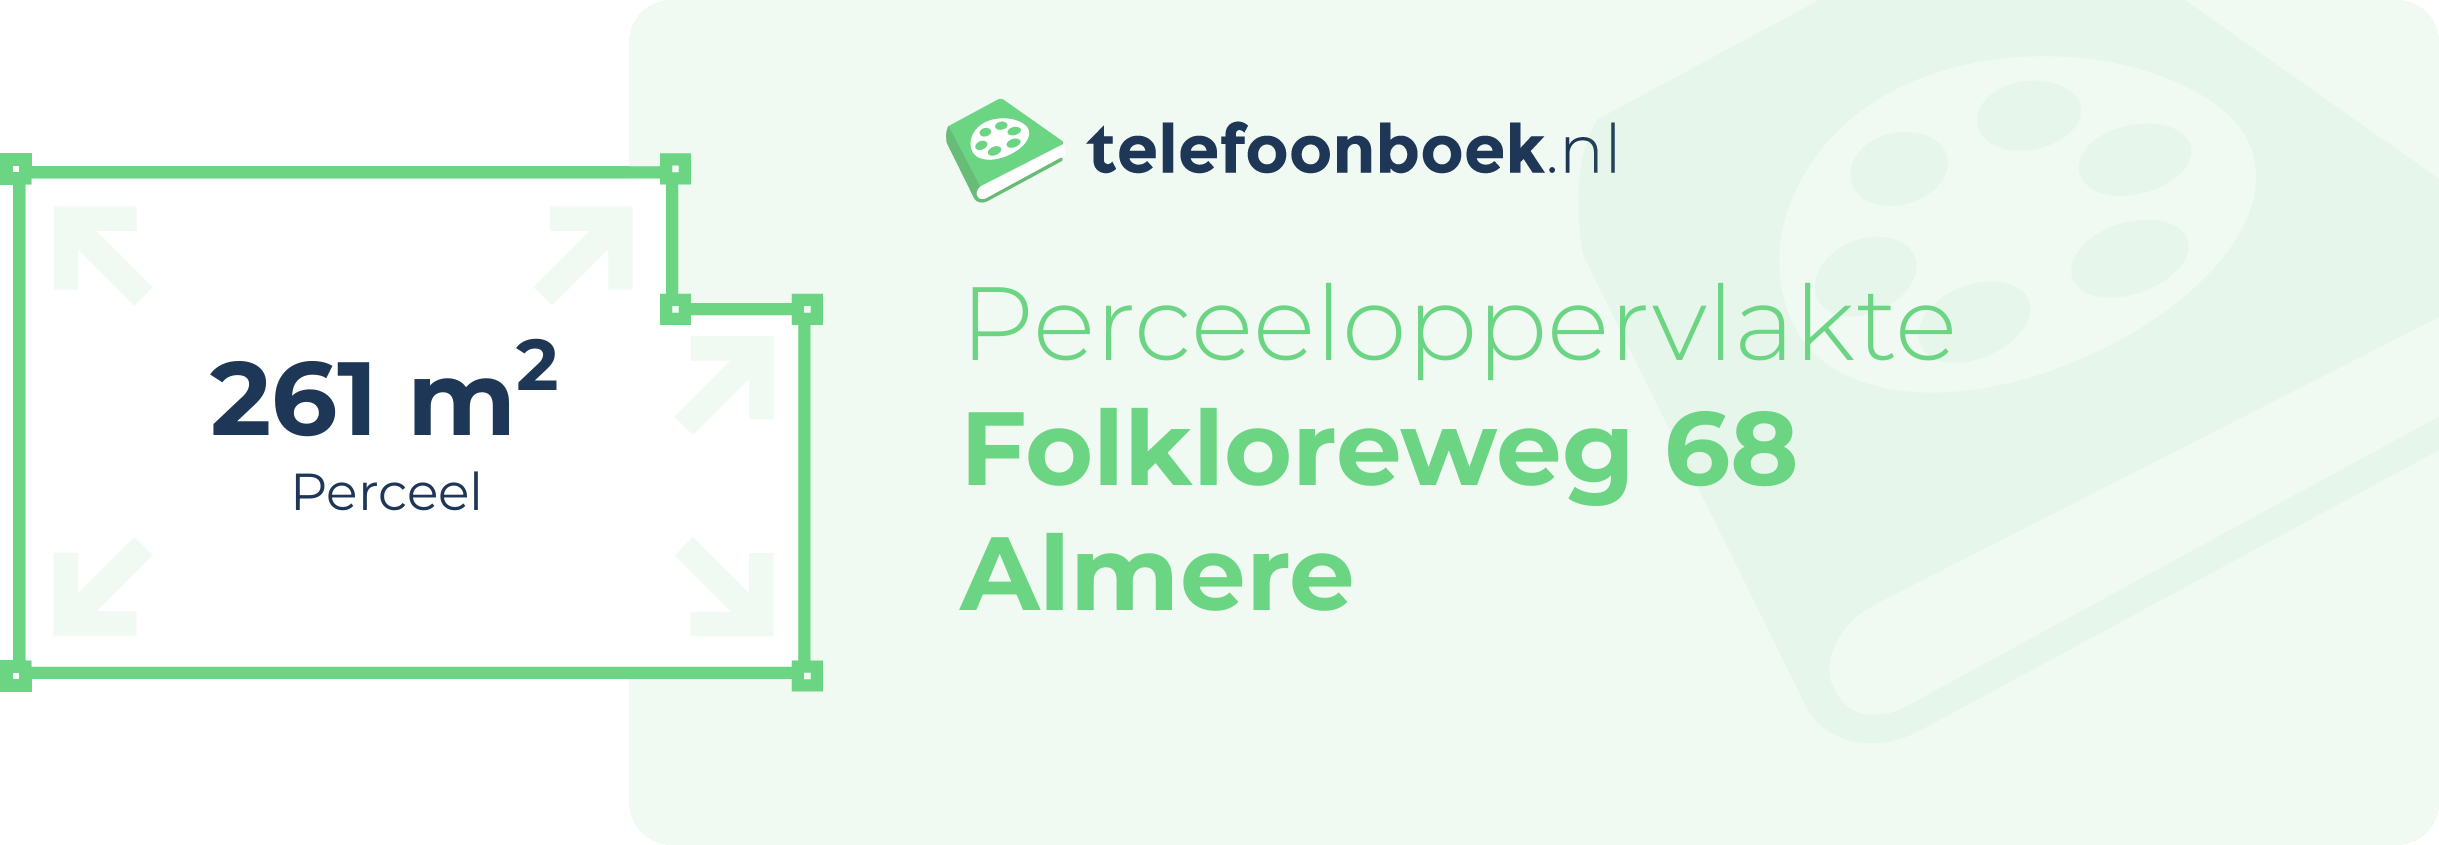 Perceeloppervlakte Folkloreweg 68 Almere